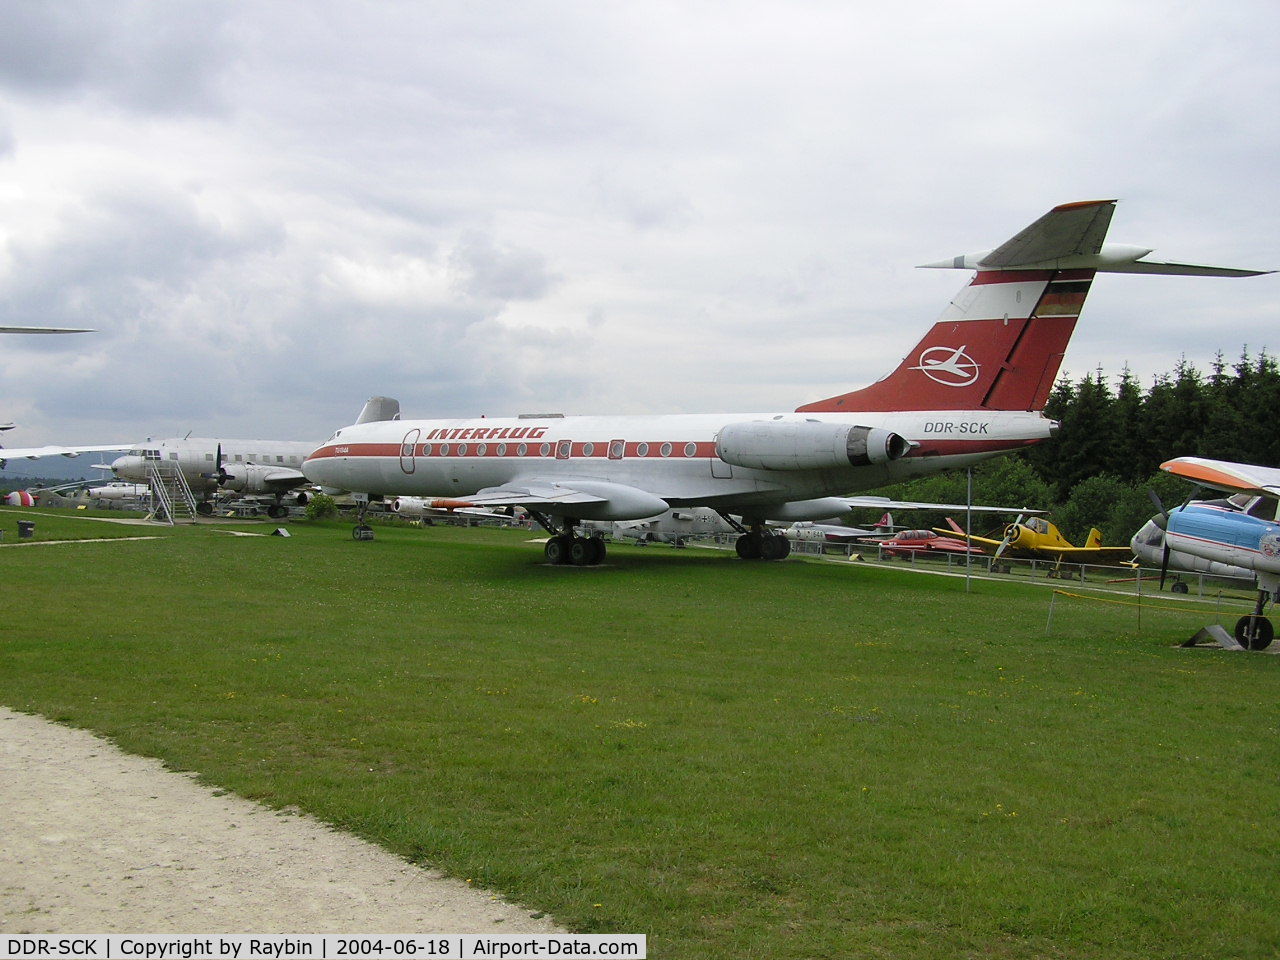 DDR-SCK, 1971 Tupolev TU-134AK C/N 1351304, Former Interflug German Democratic Republic